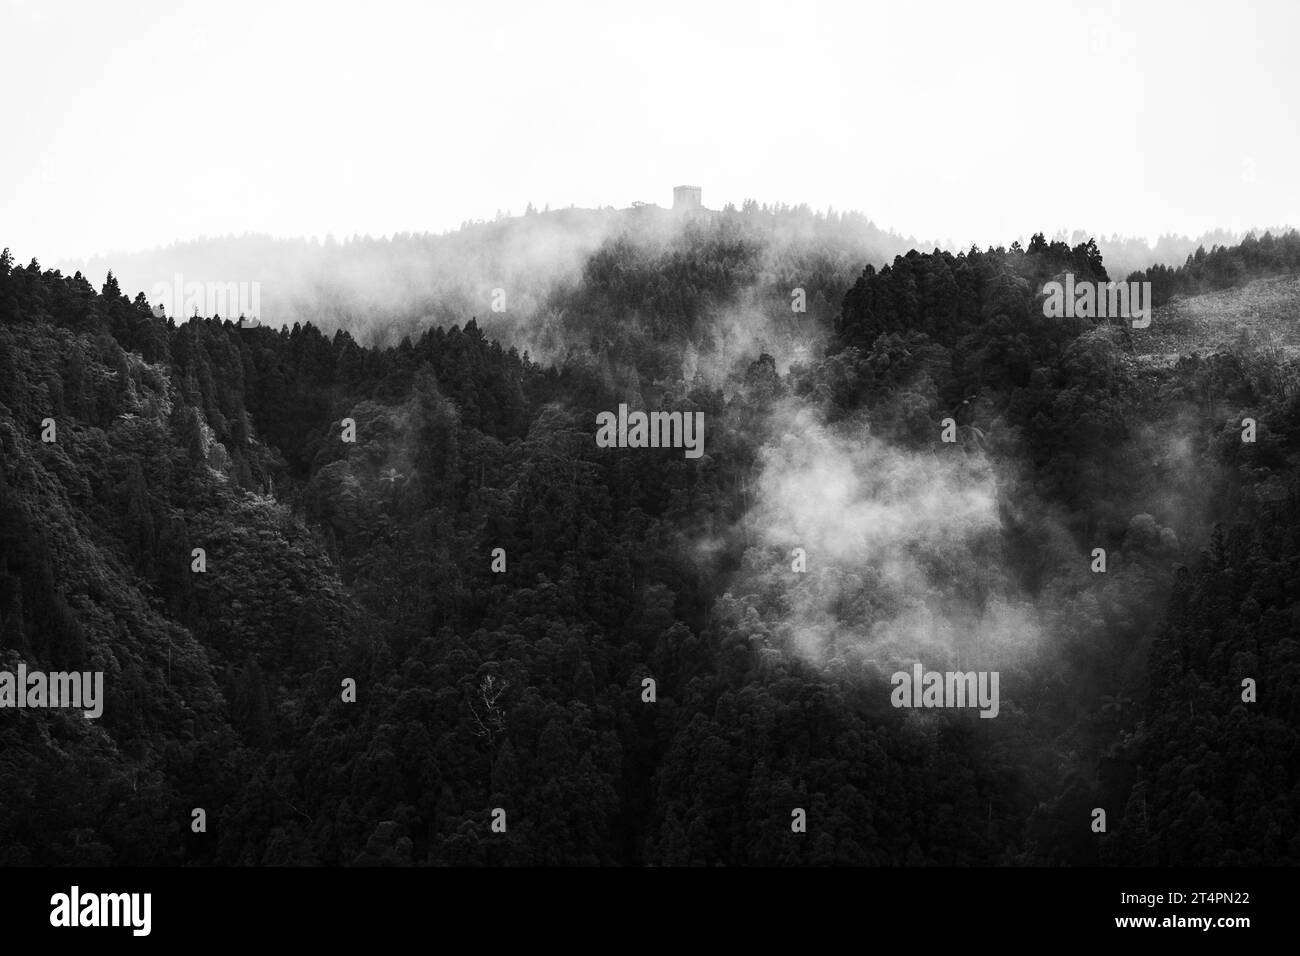 Geheimnisvolle Landschaft mit Nebel und Bäumen am Kraterrand, Furnas, Azoren Inseln. Stockfoto